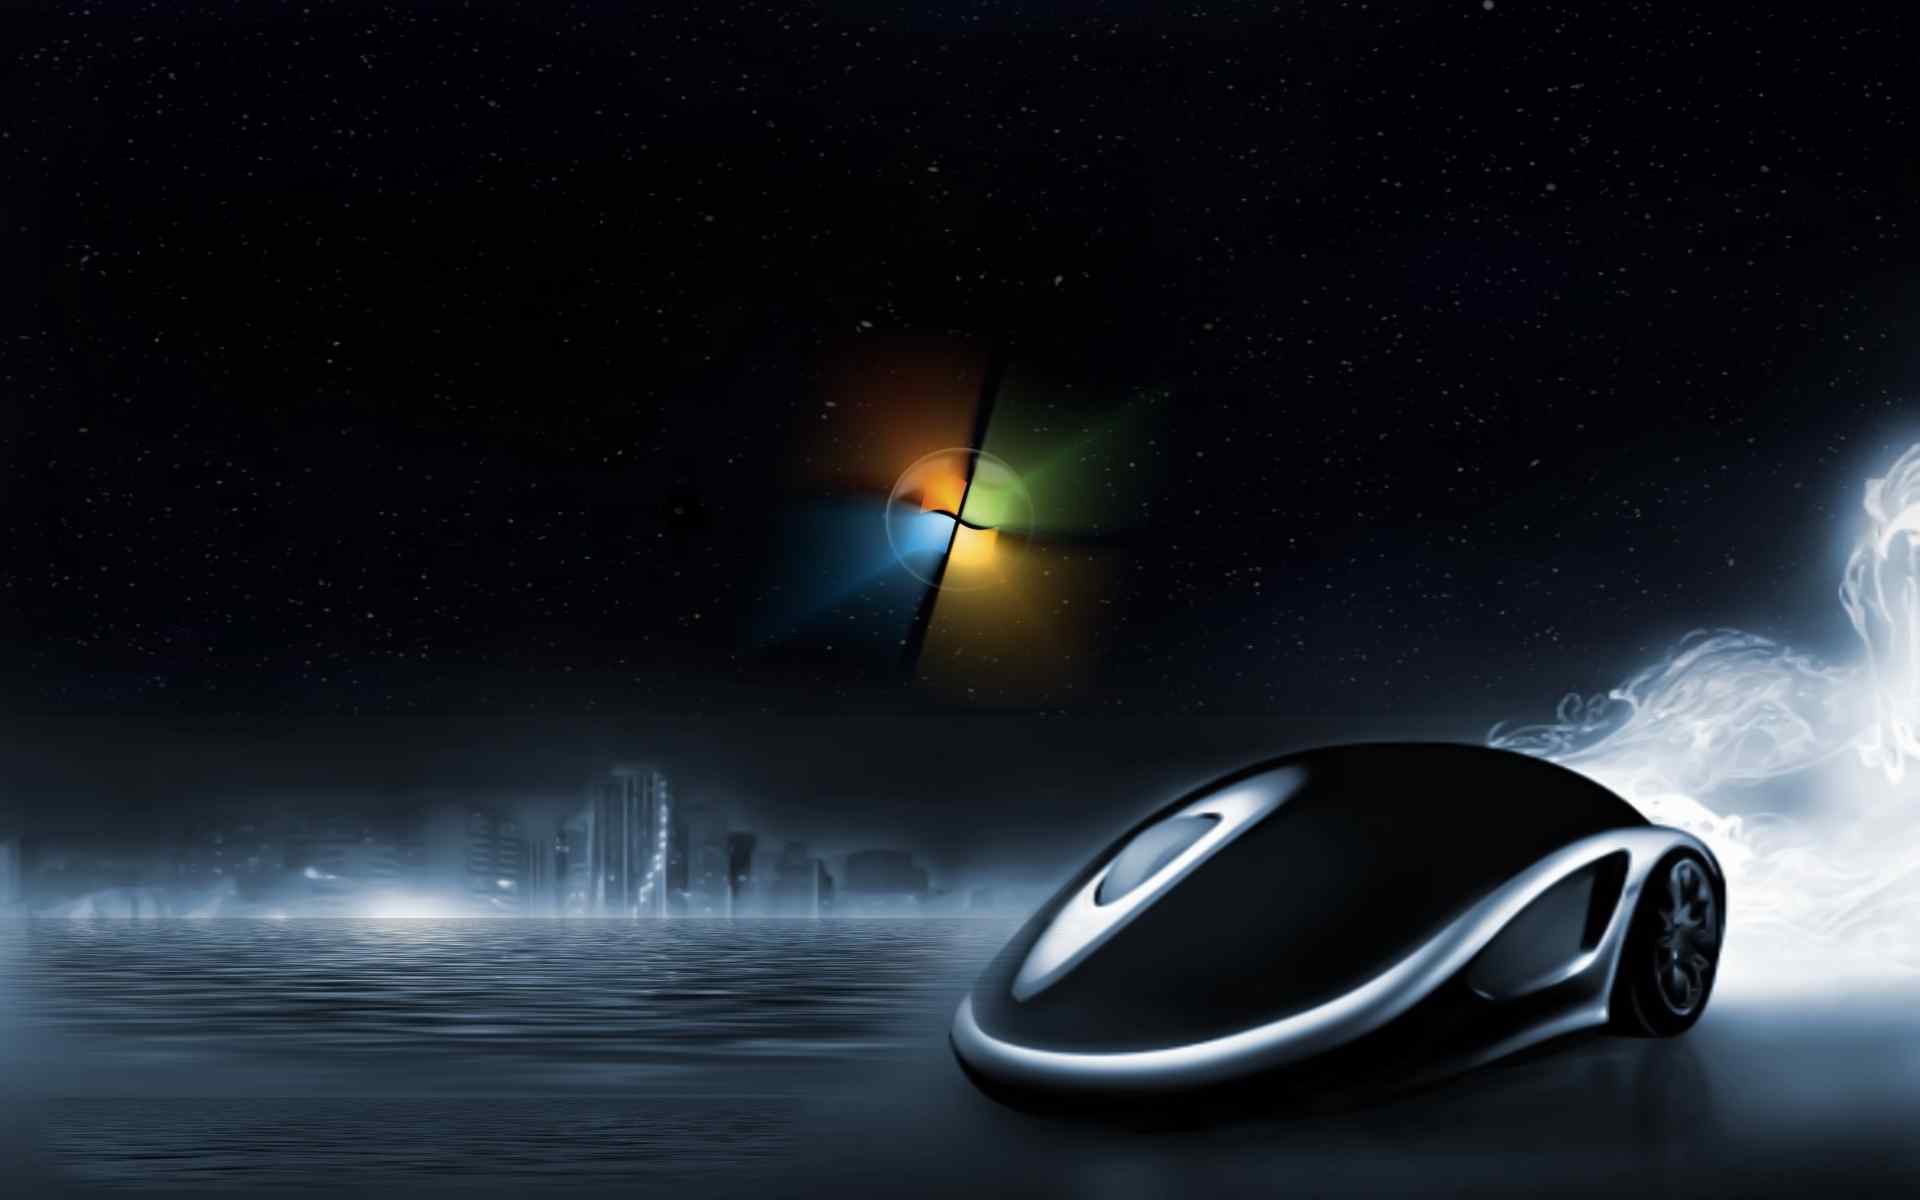 微软经典黑色鼠标桌面壁纸